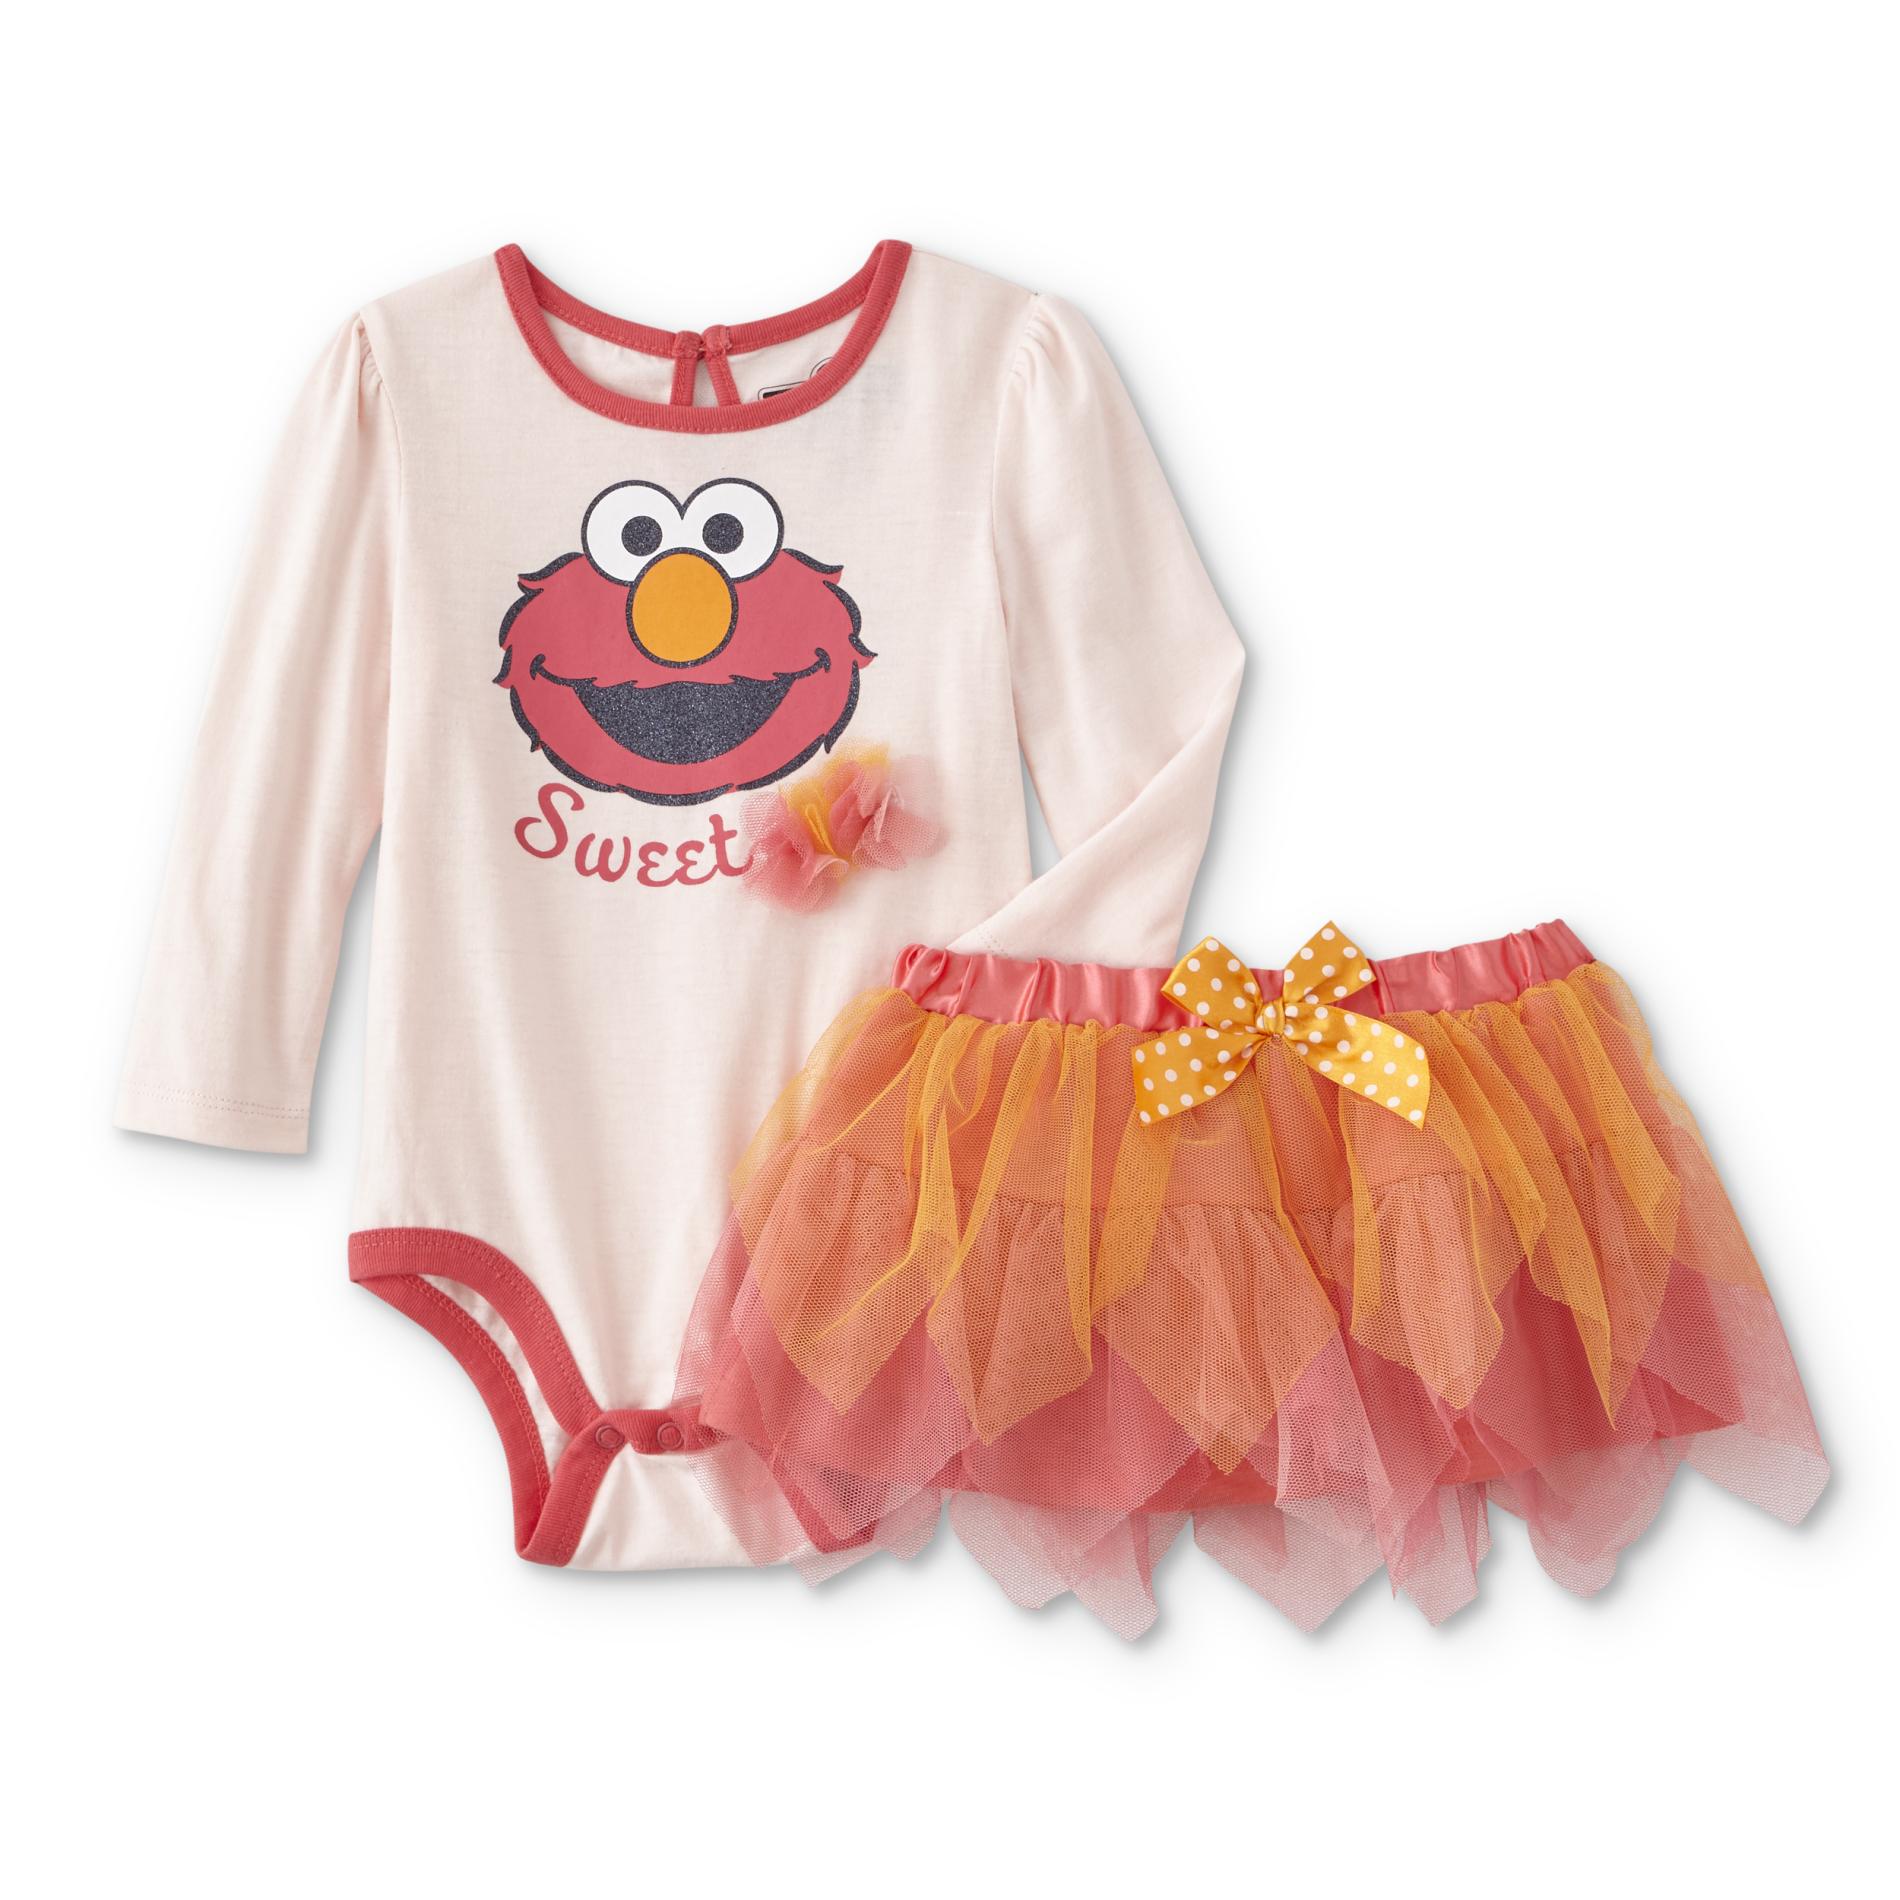 Sesame Street Infant Girls' Bodysuit & Skirt - Elmo